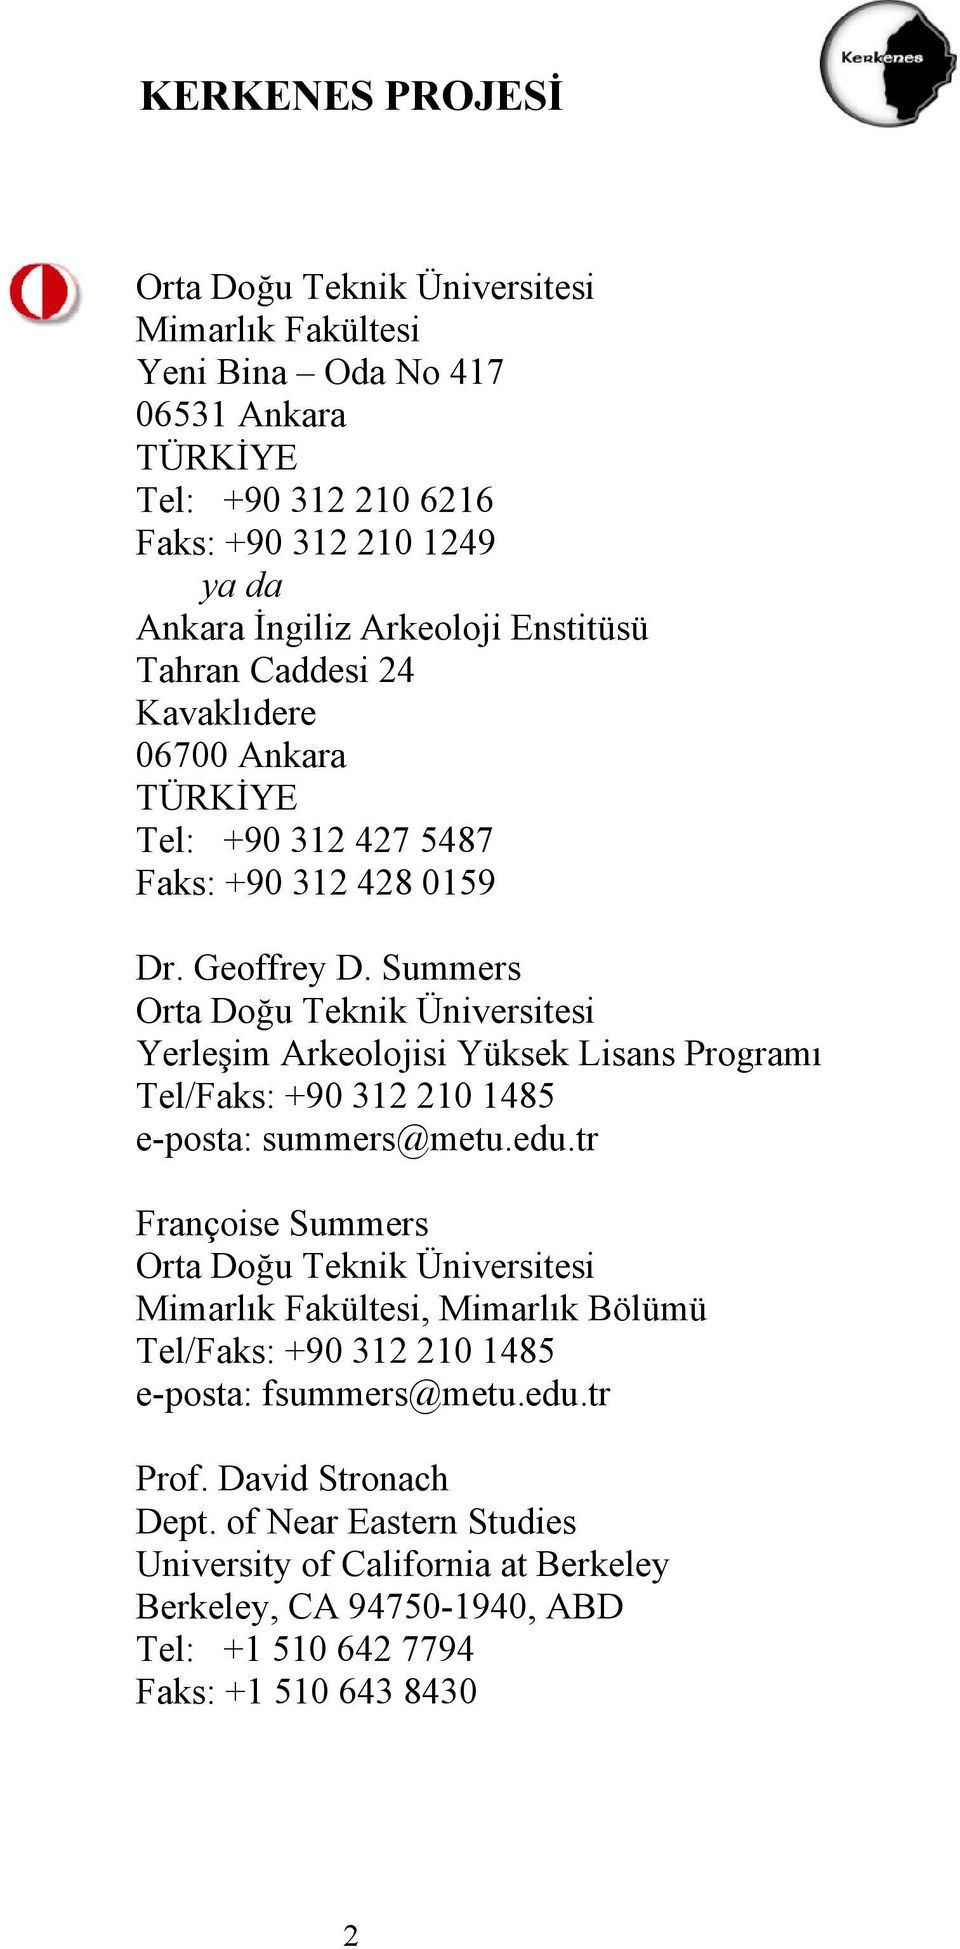 Summers Orta Doğu Teknik Üniversitesi Yerleşim Arkeolojisi Yüksek Lisans Programı Tel/Faks: +90 312 210 1485 e-posta: summers@metu.edu.